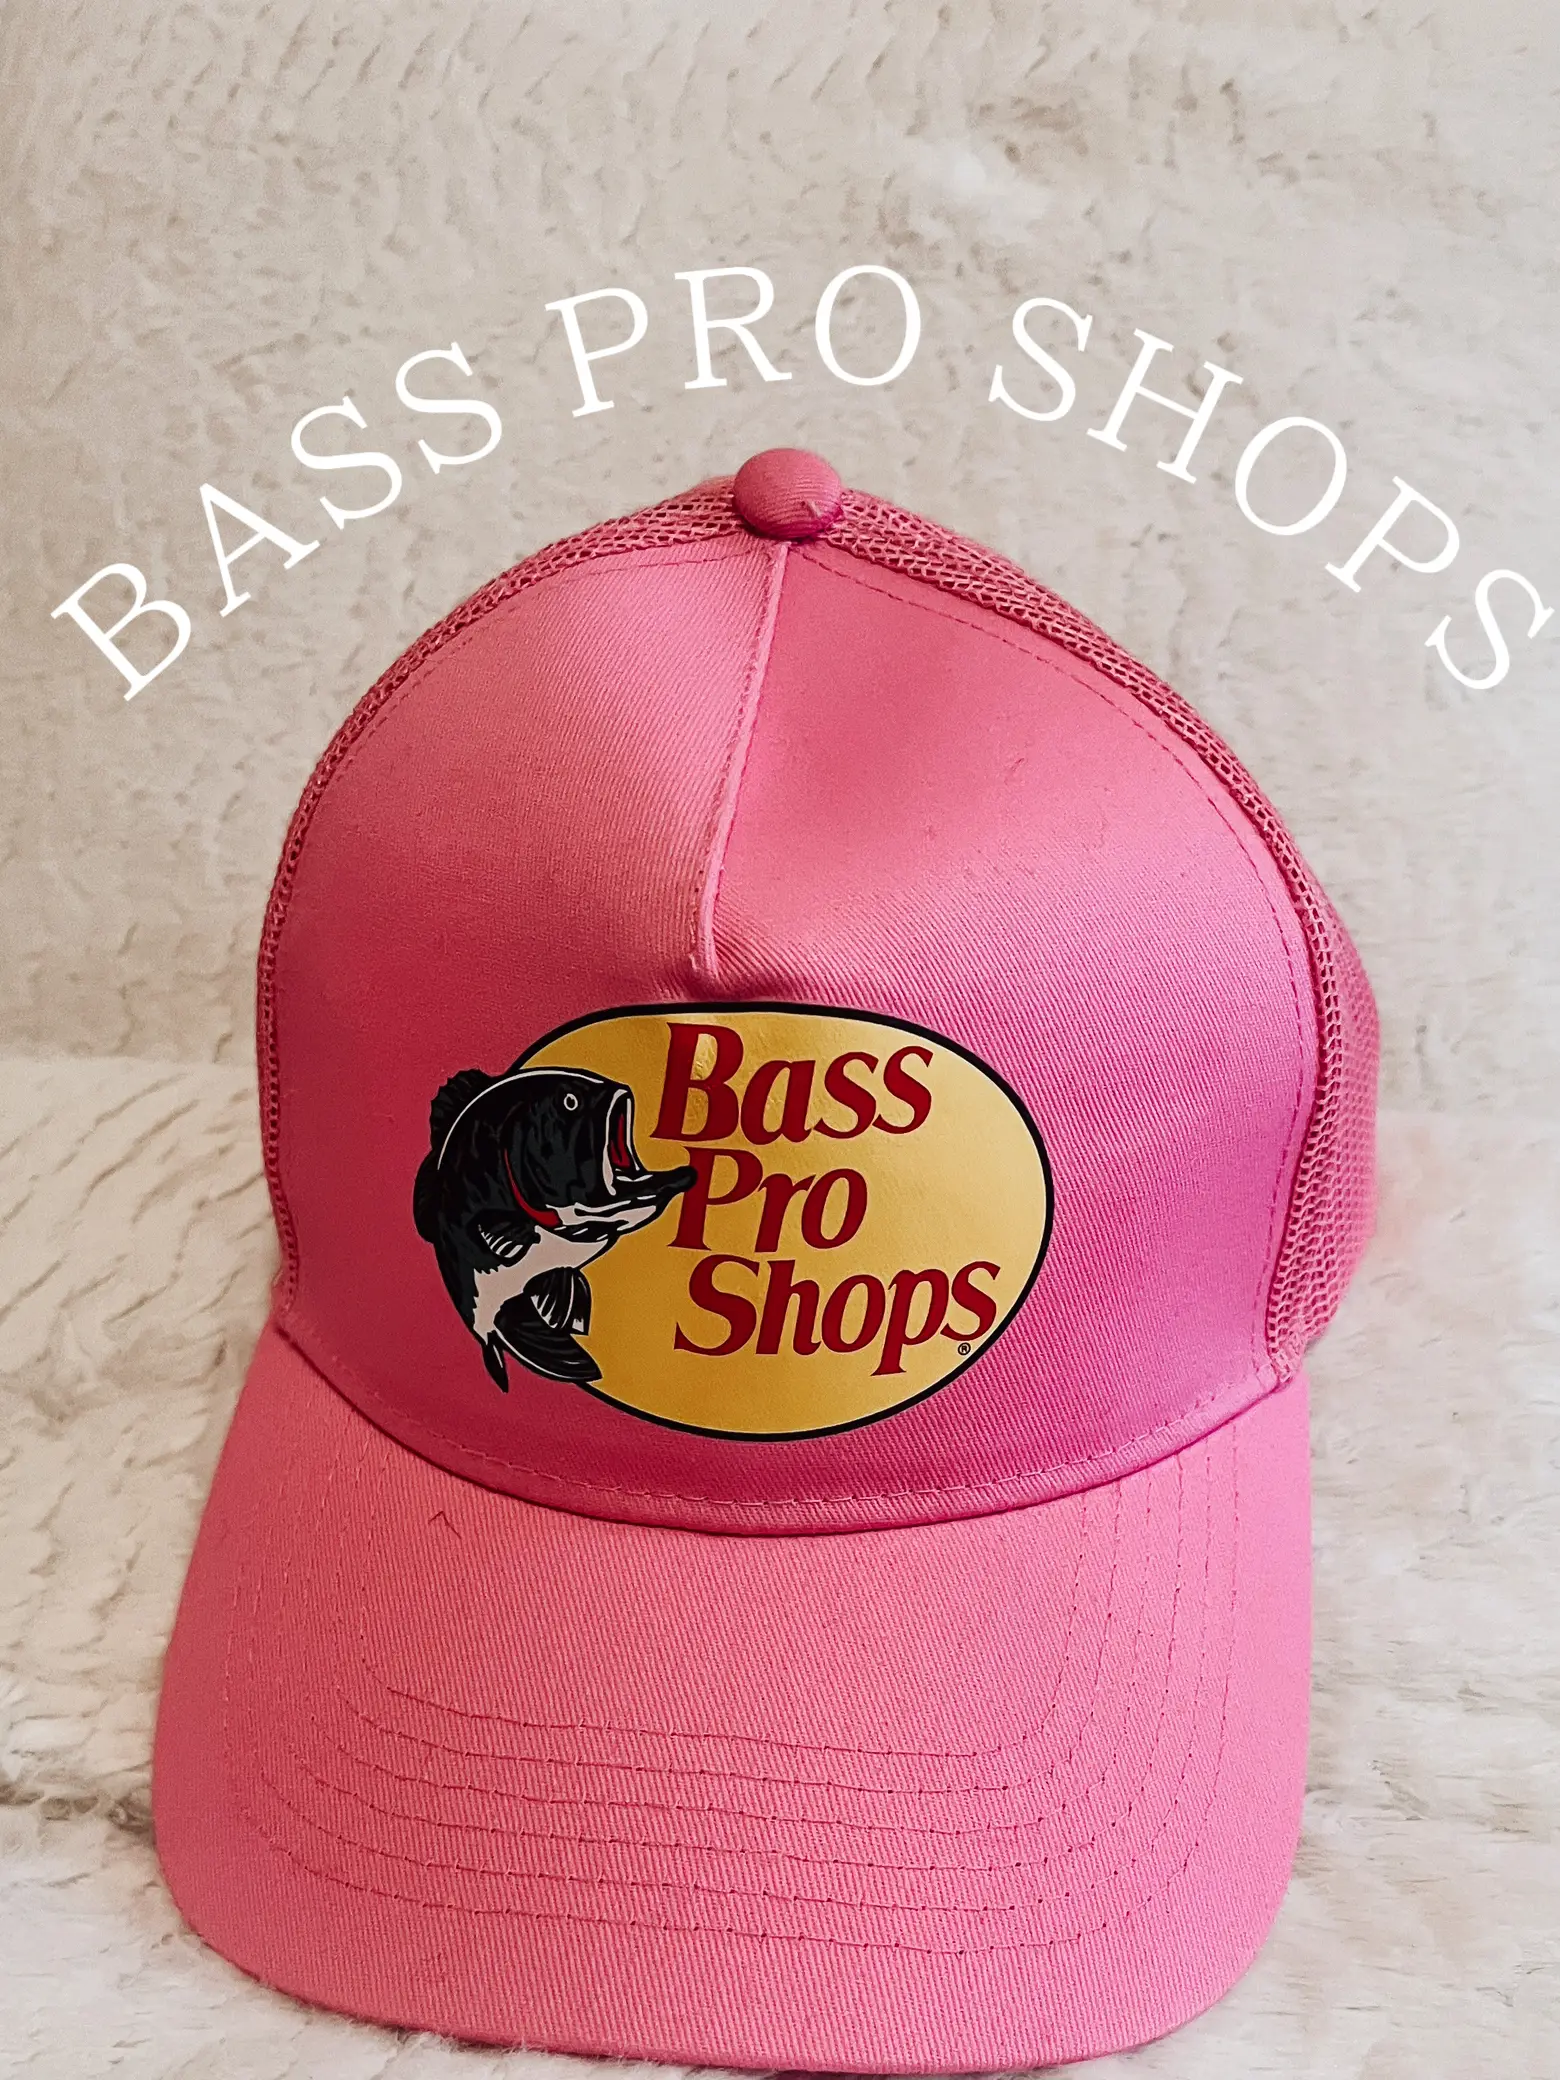 Real Bass Pro Shop Trucker Hat Kiss Mark / Von Dutch Trucker Hat / Vintage  Trucker Hat